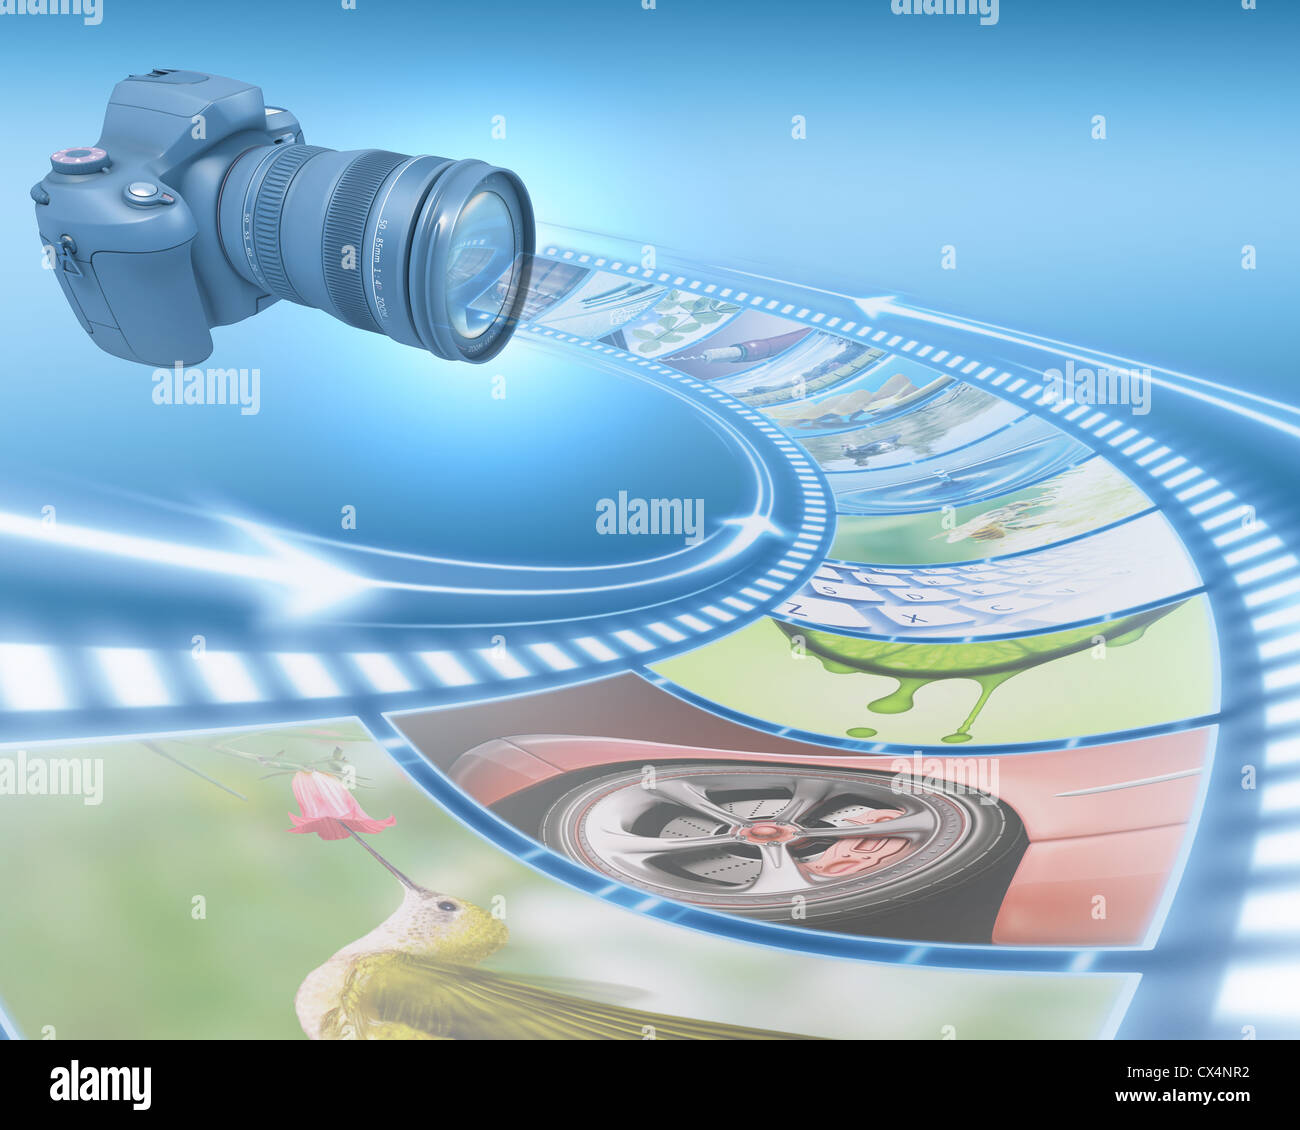 Profi-Kamera nimmt Bilder. Der Filmstreifen Bilder geben Sie durch die Linse. Exklusives Design (Design-Konzept). Stockfoto